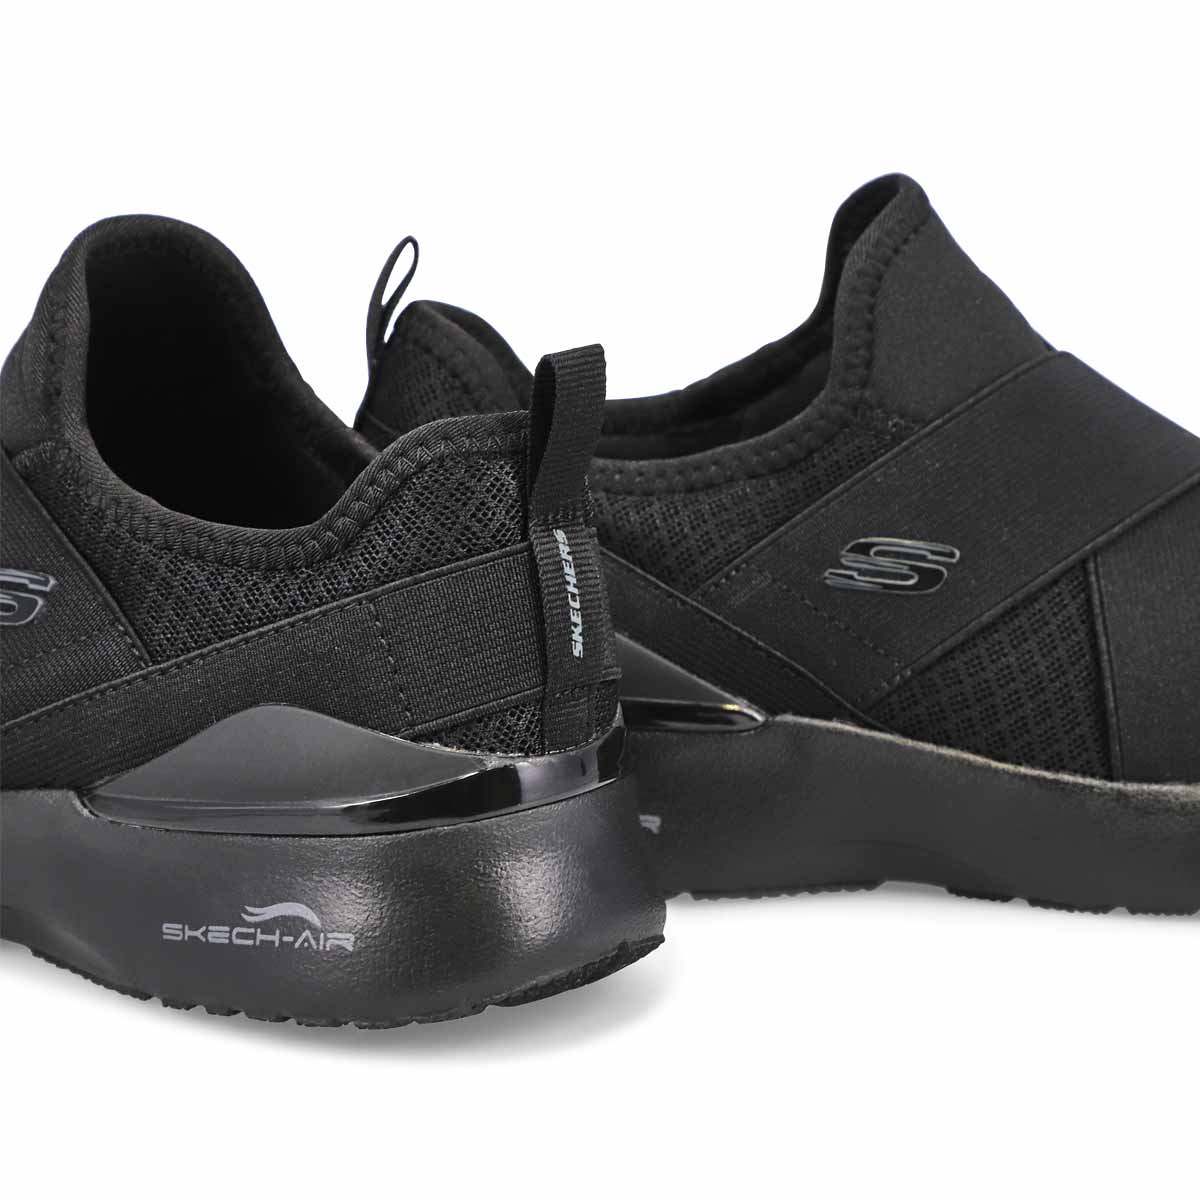 Women's Skech-Air Dynamight Sneaker - Black